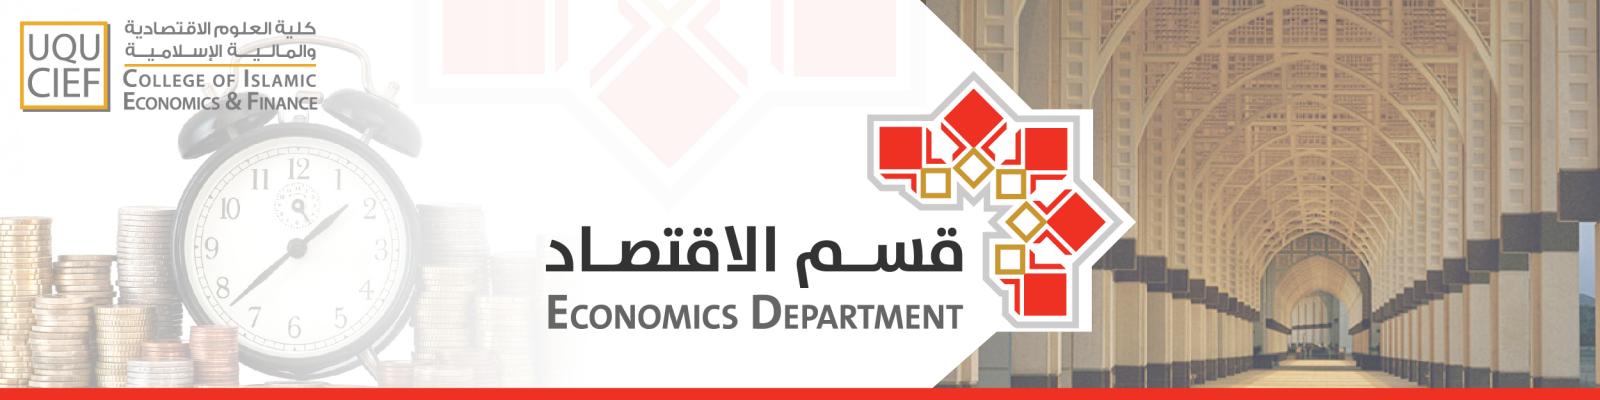 كلية العلوم الاقتصادية والمالية الإسلامية جامعة أم القرى